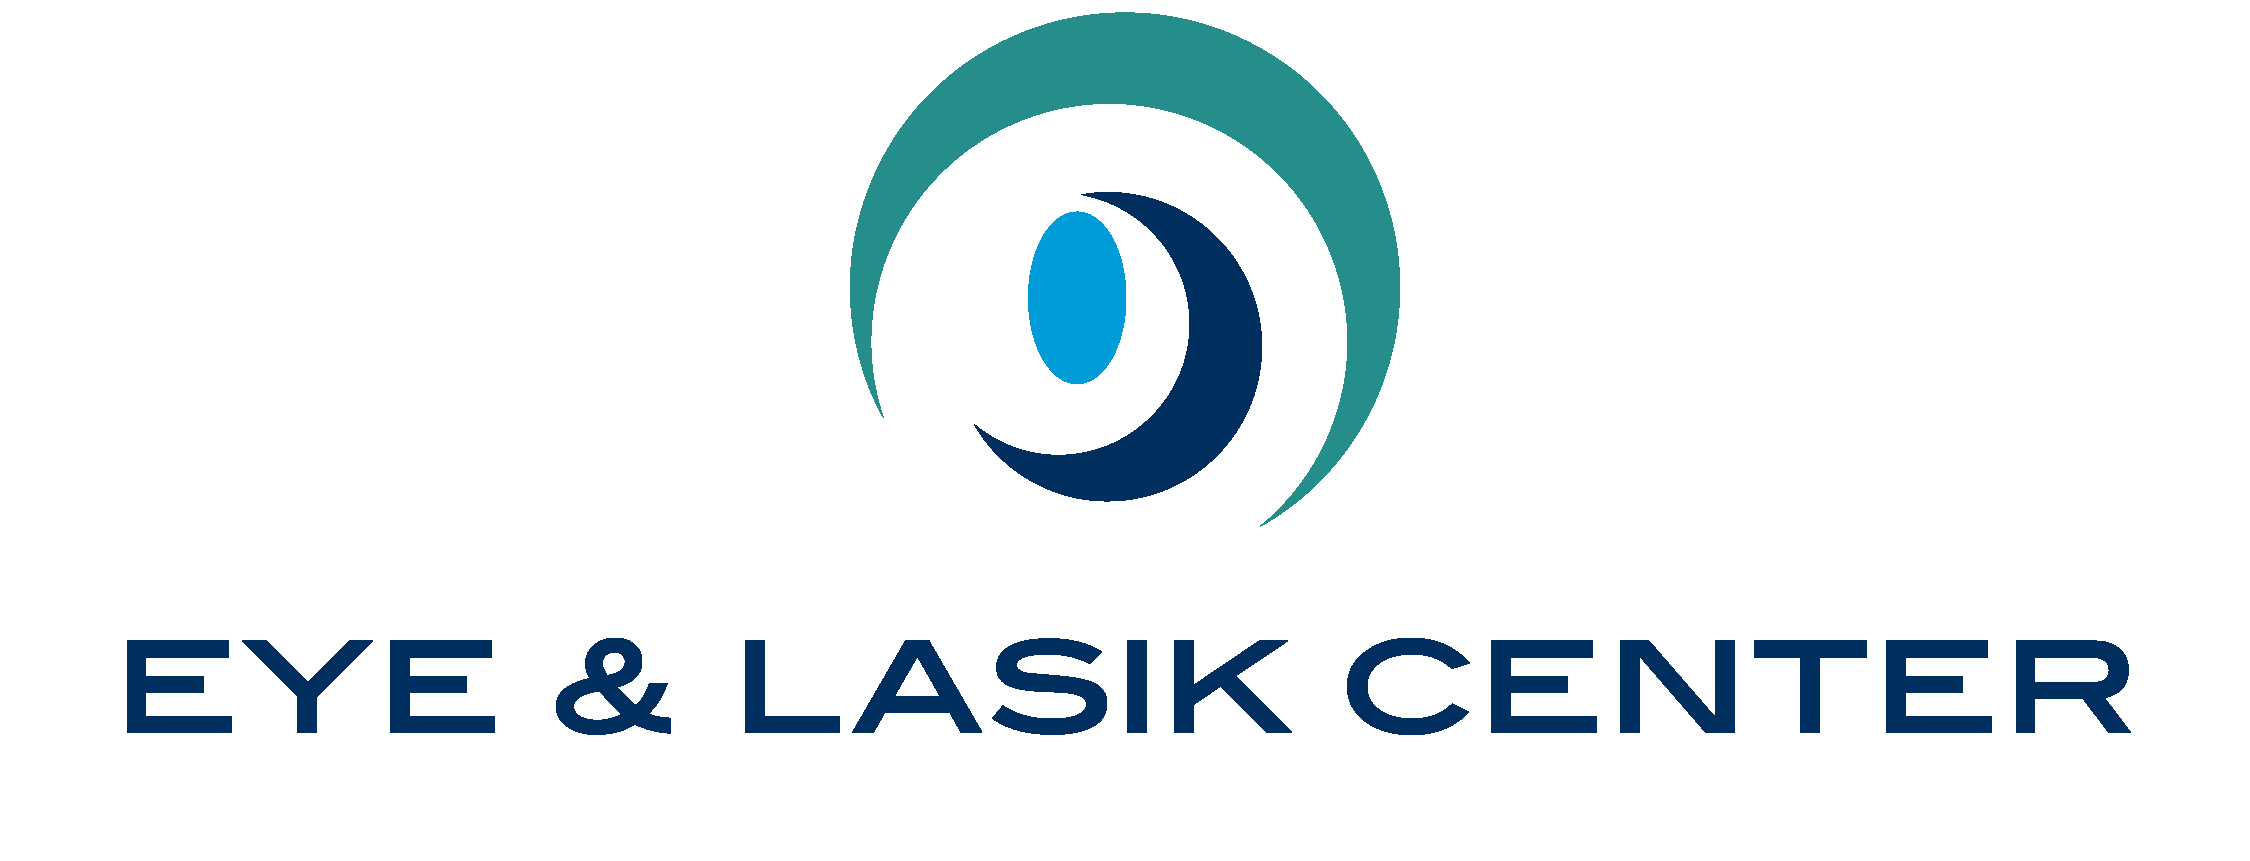 Eye & LASIK Center 